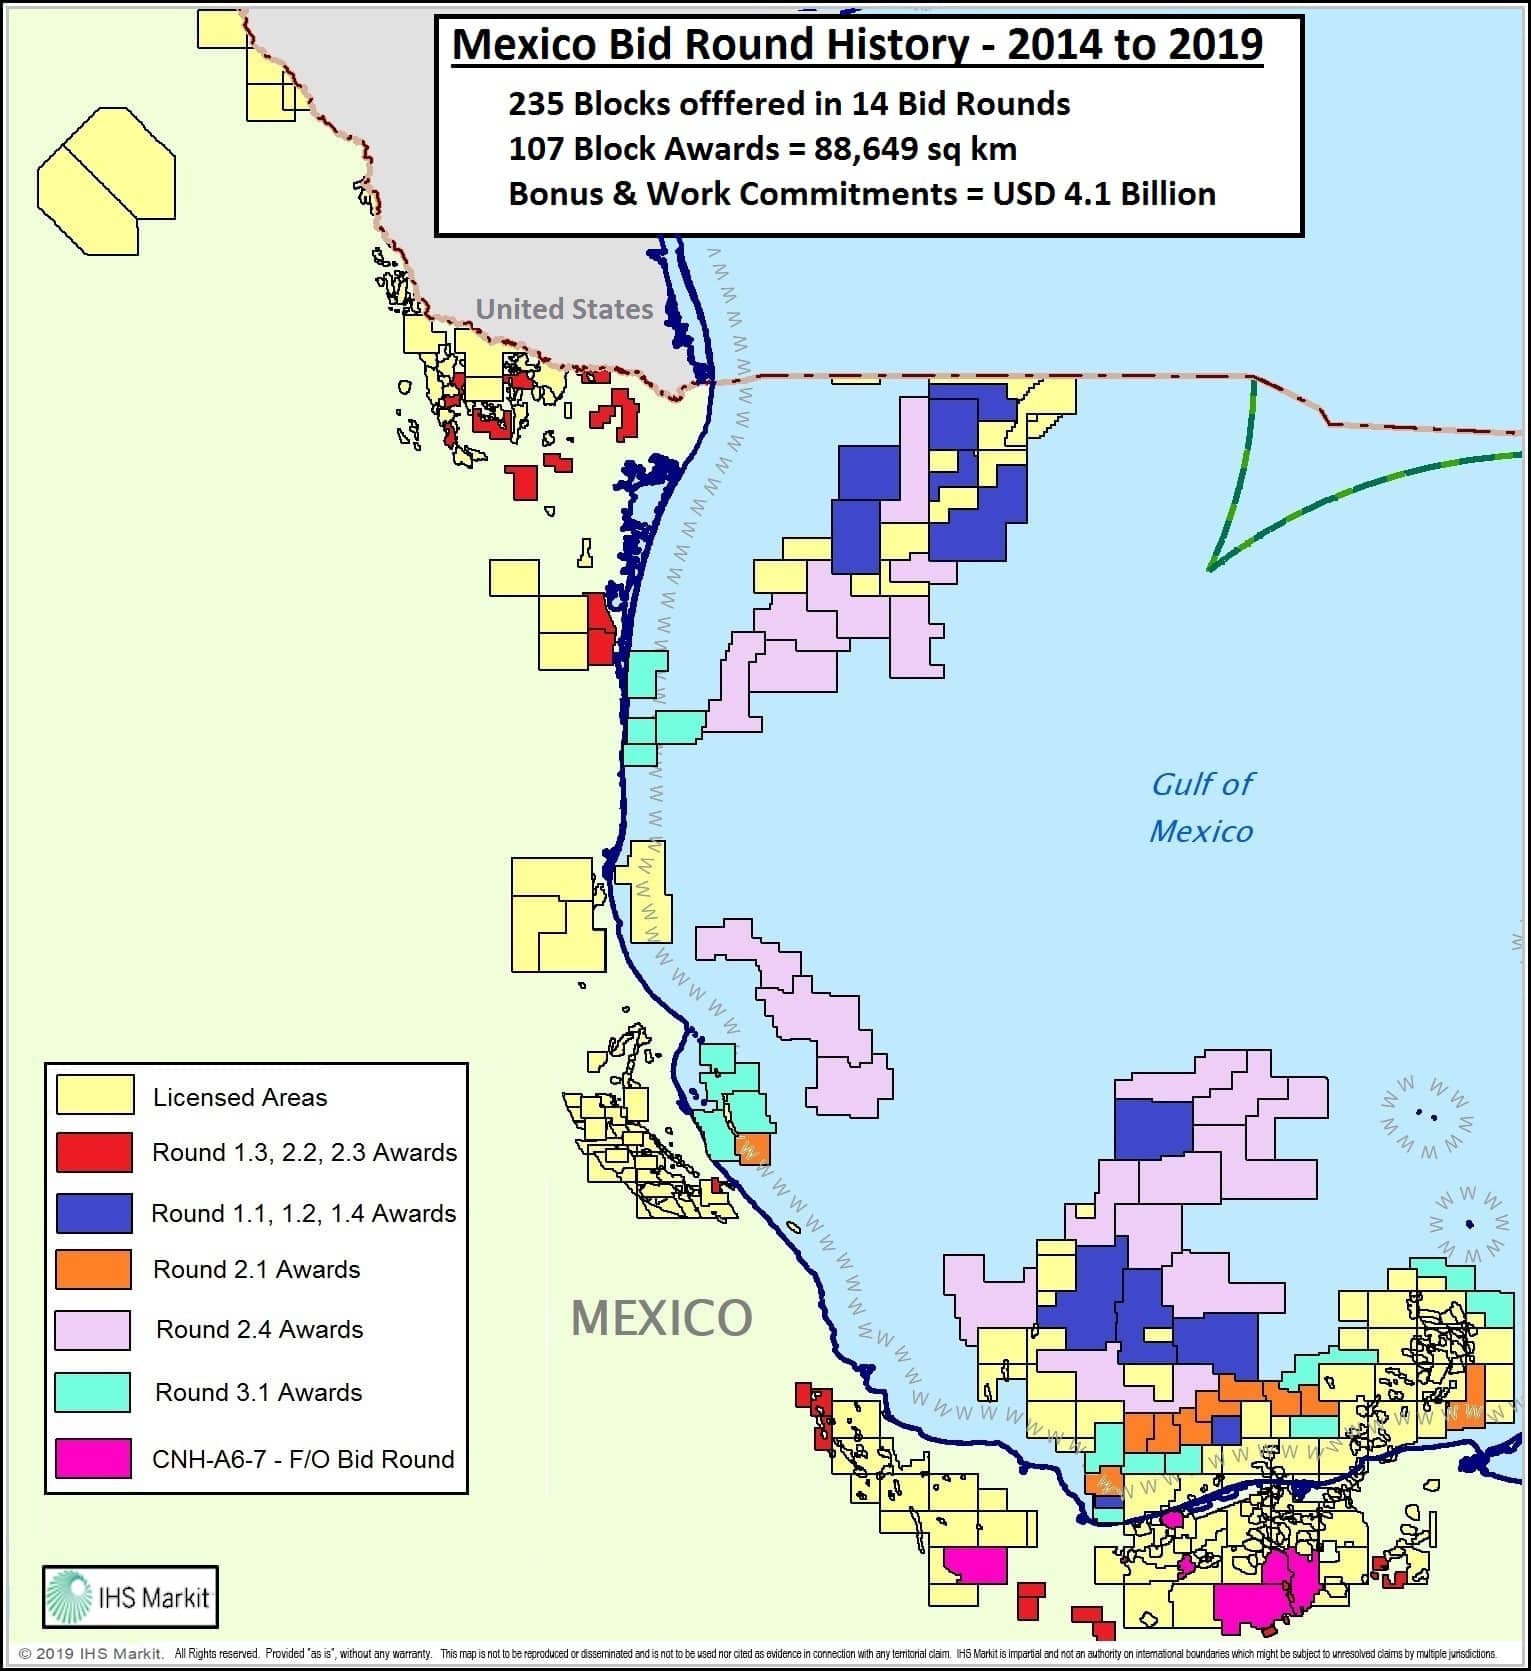 Mexico bid round history map